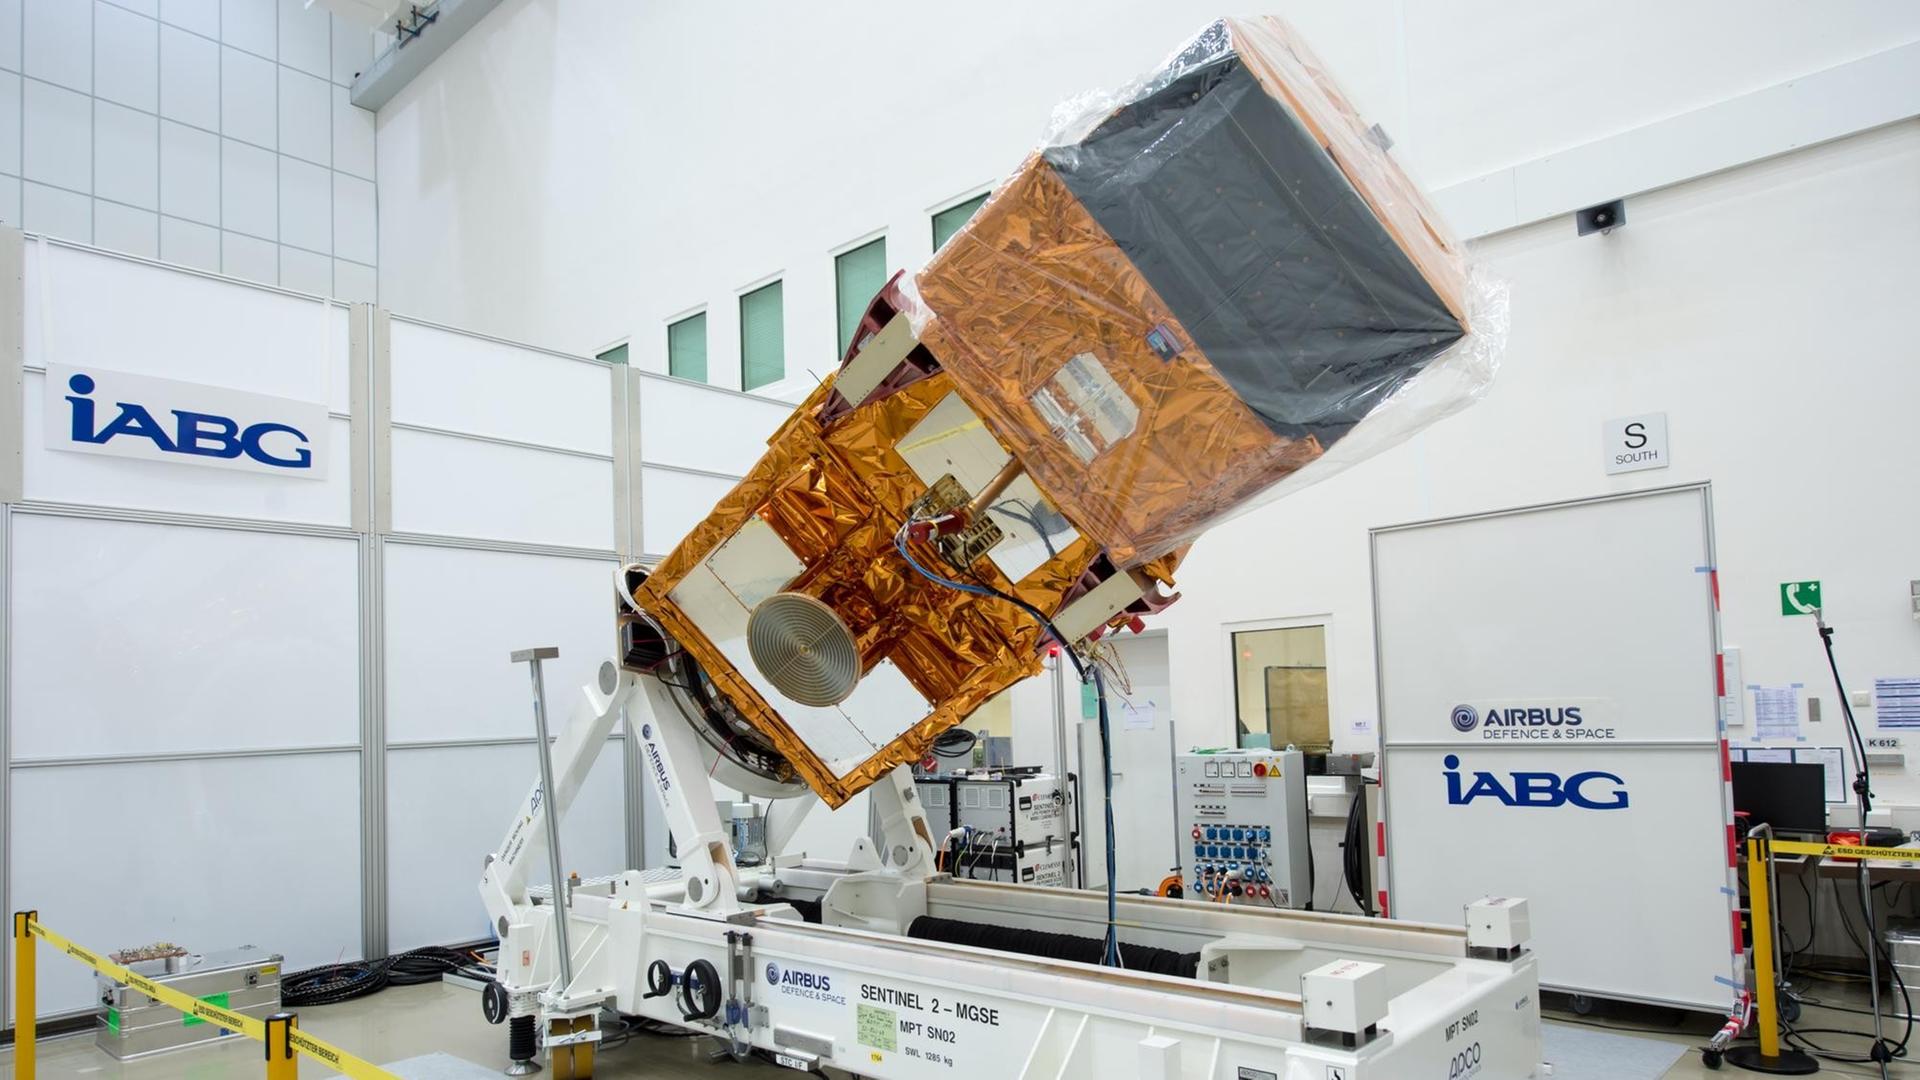 Da war er noch am Boden: Satellit Sentinel 2a in seiner Montagehalle in Bayern.